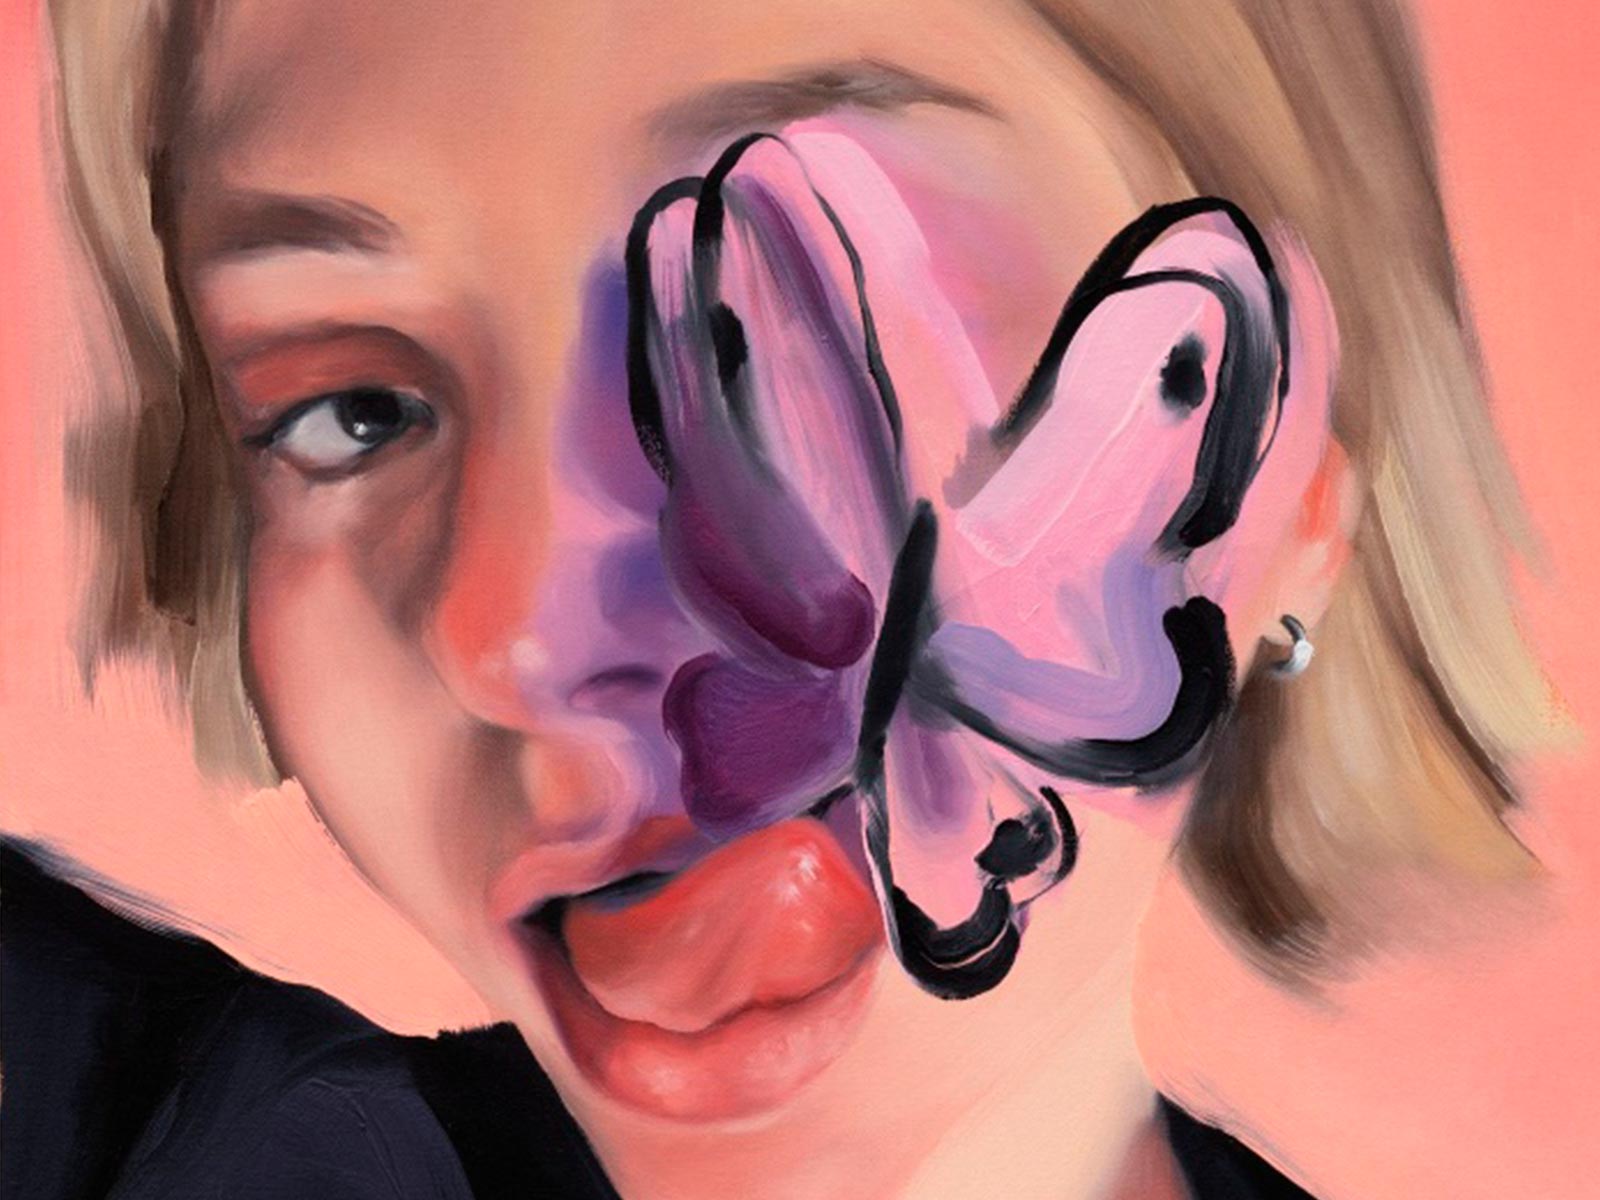 Dentro del universo figurativo y sensual de Amanda Wall